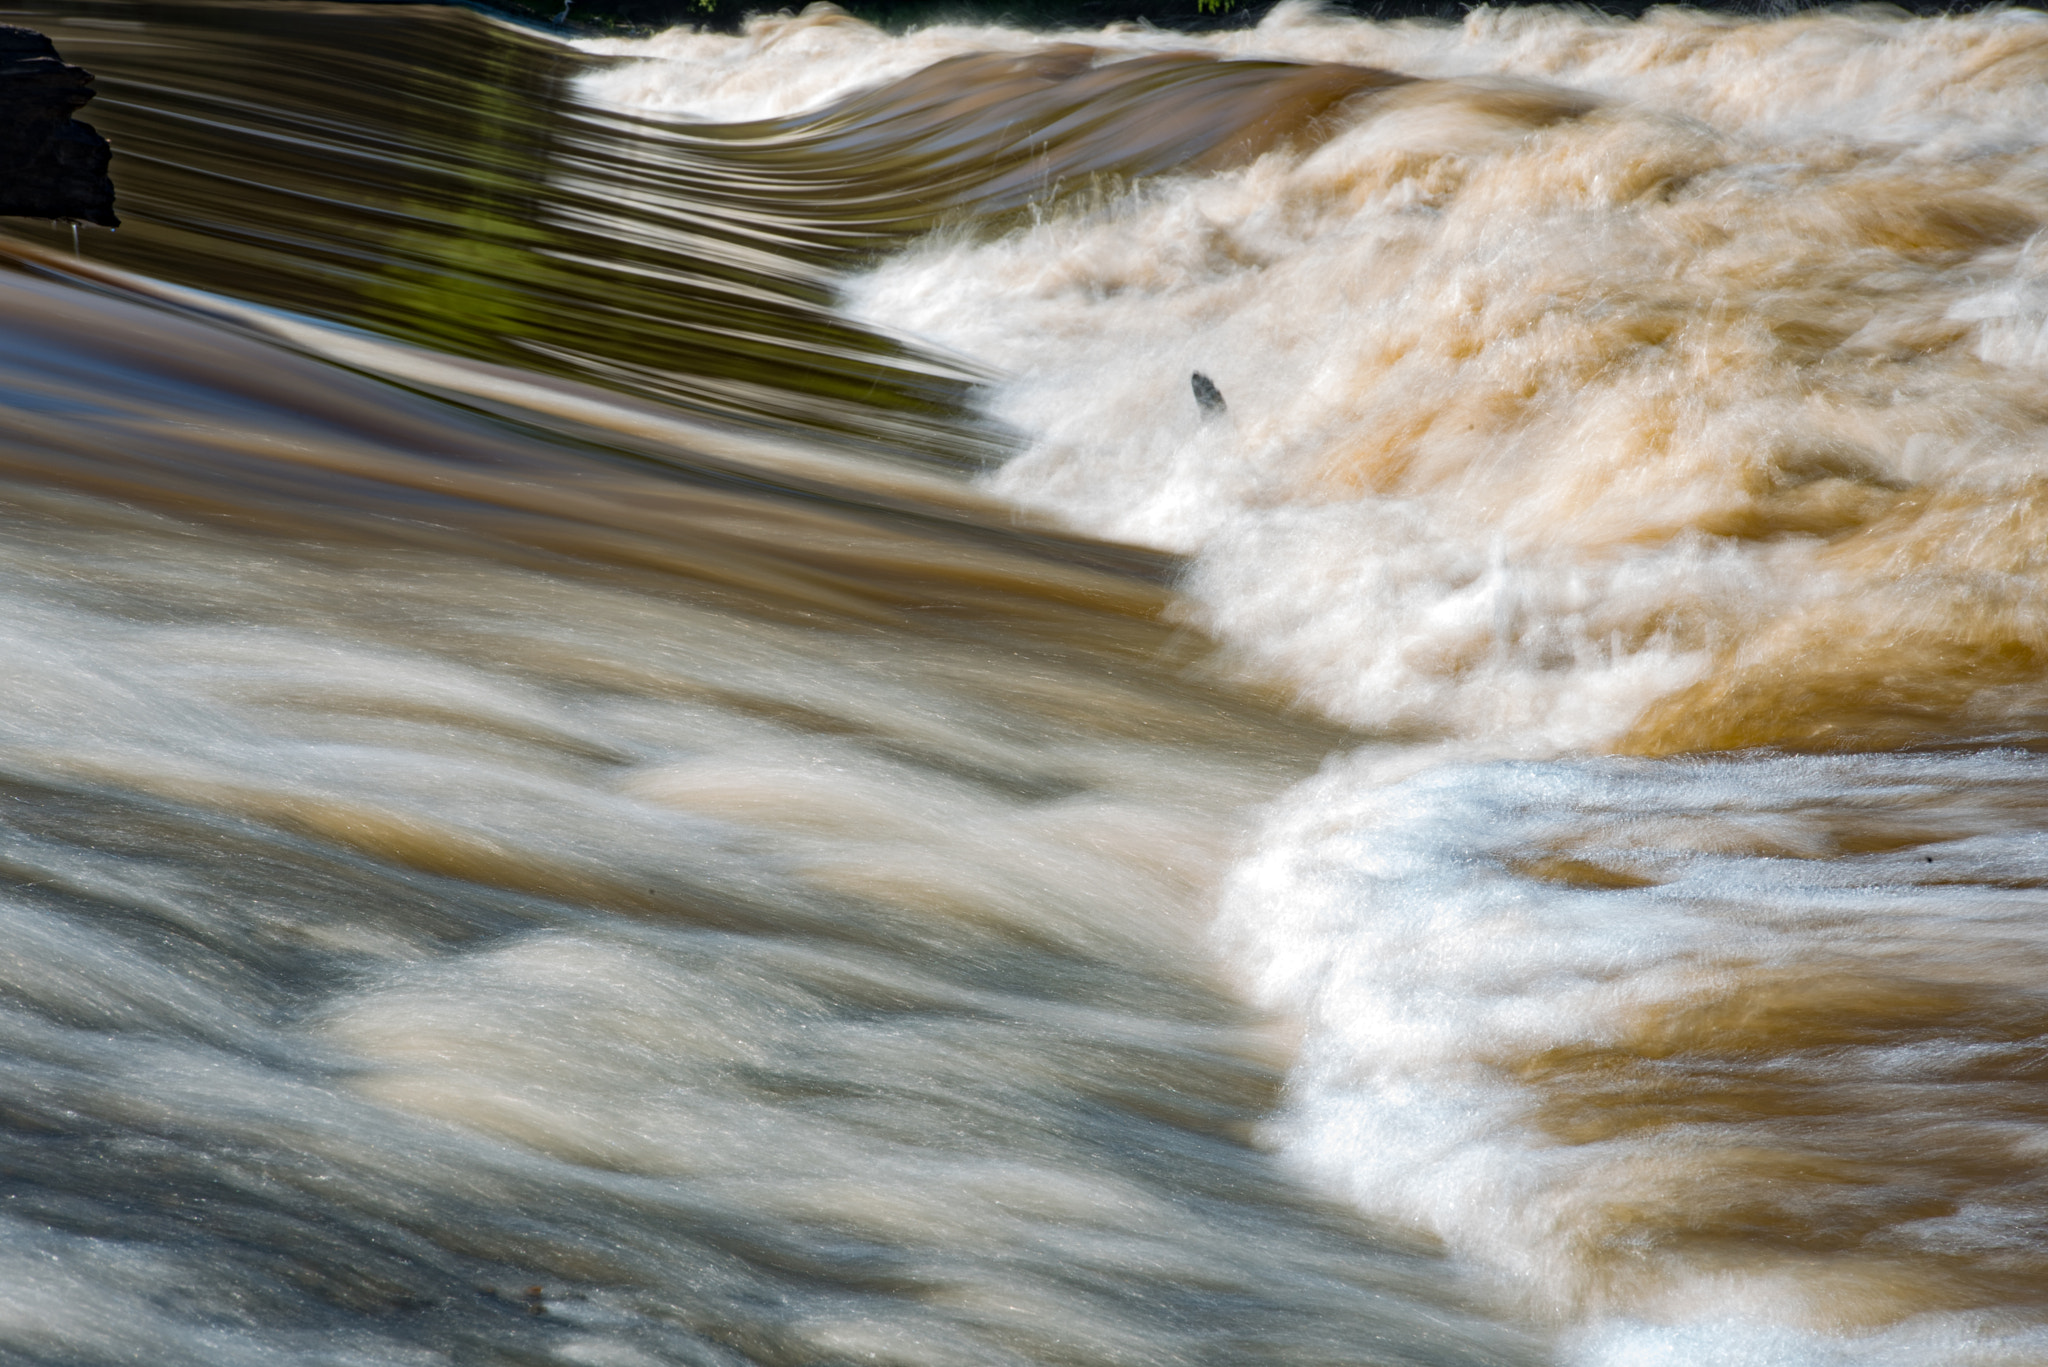 Nikon D750 + AF Zoom-Nikkor 35-105mm f/3.5-4.5D sample photo. Missouri river in flood photography